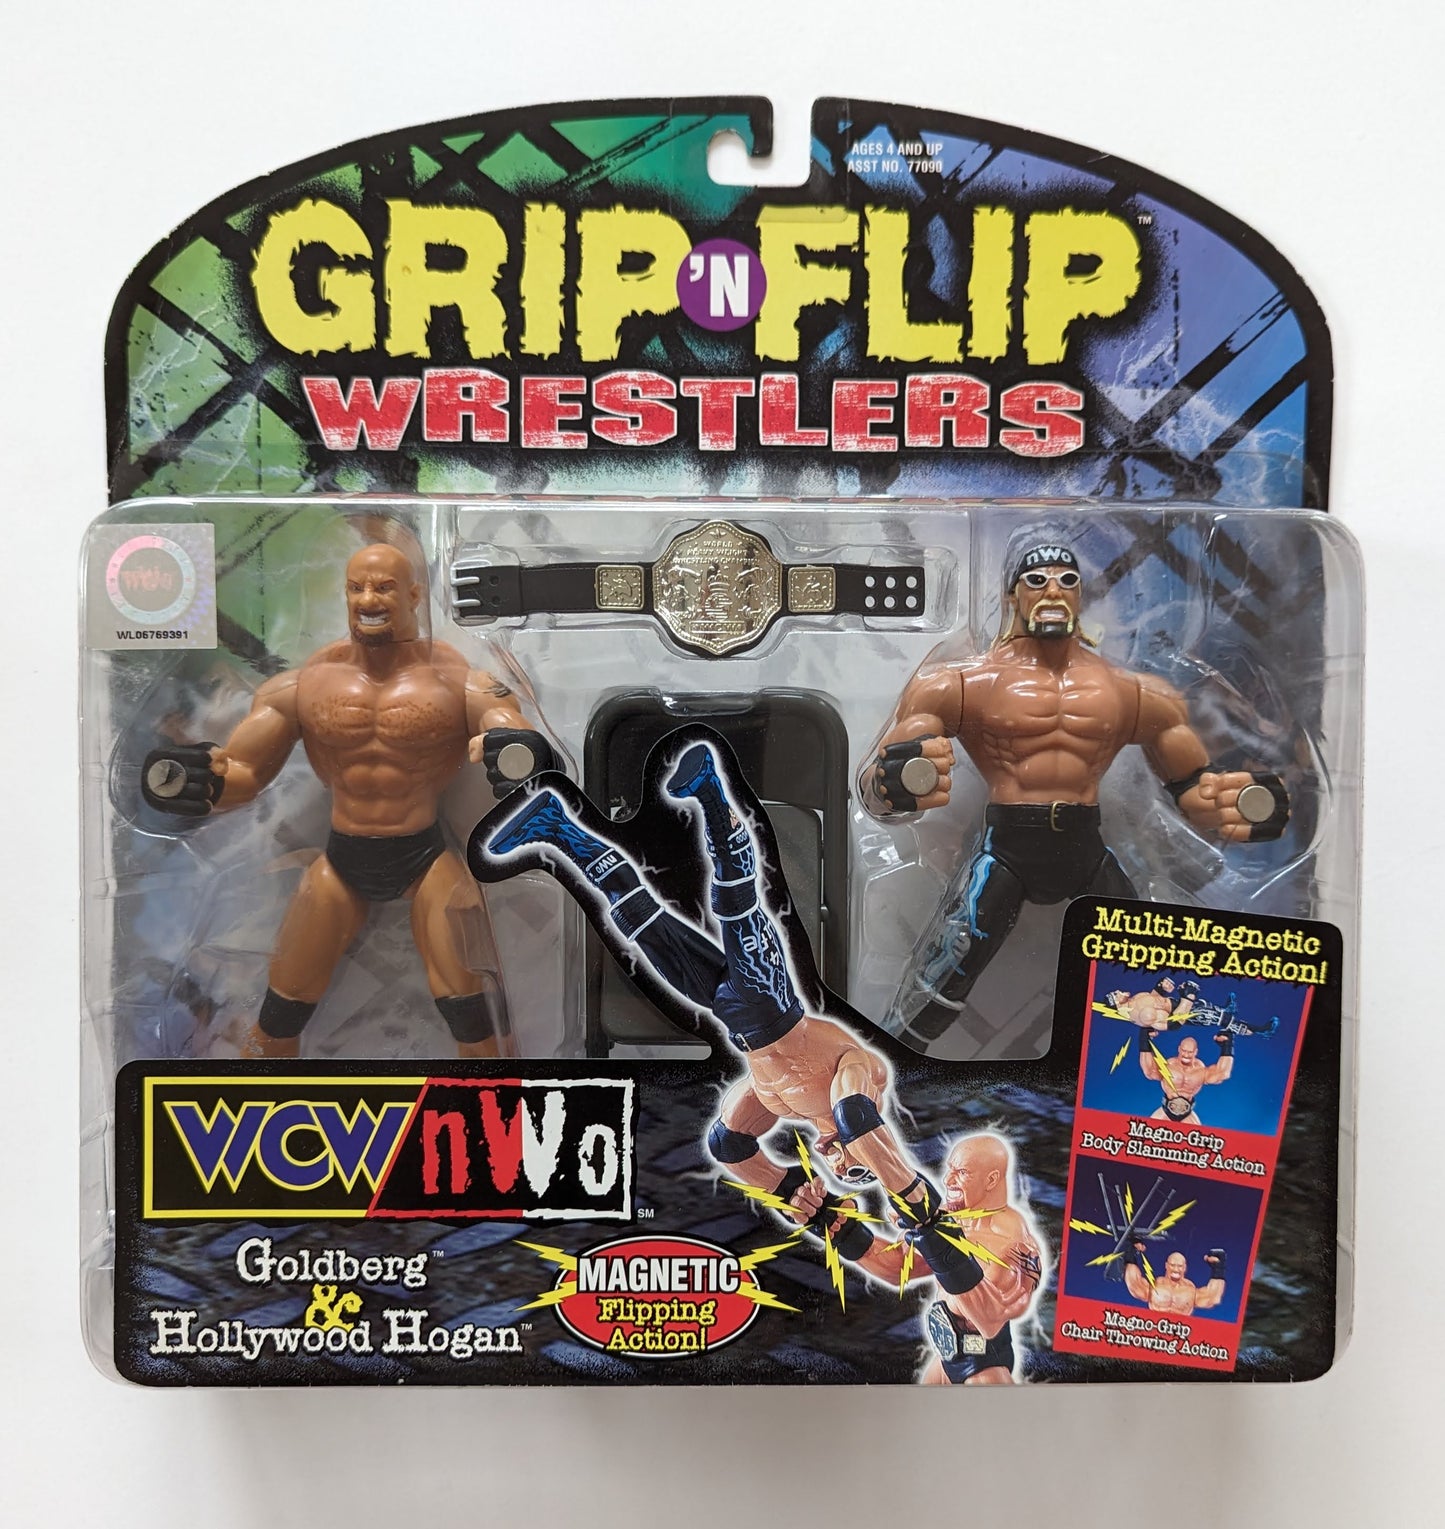 1999 WCW Toy Biz Grip 'N' Flip Series 1 Goldberg & Hollywood Hogan